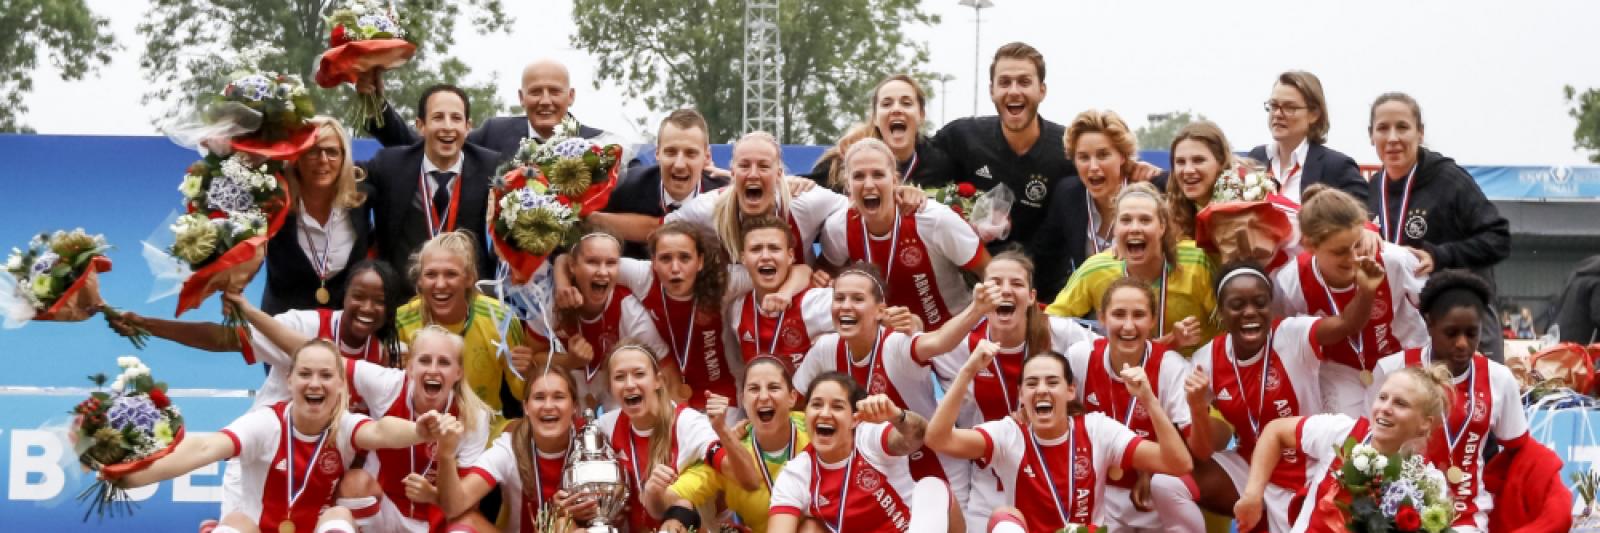 medaillewinnaar Gooi Knuppel Ajax vrouwen winnen de bekerfinale van PSV - NH Nieuws